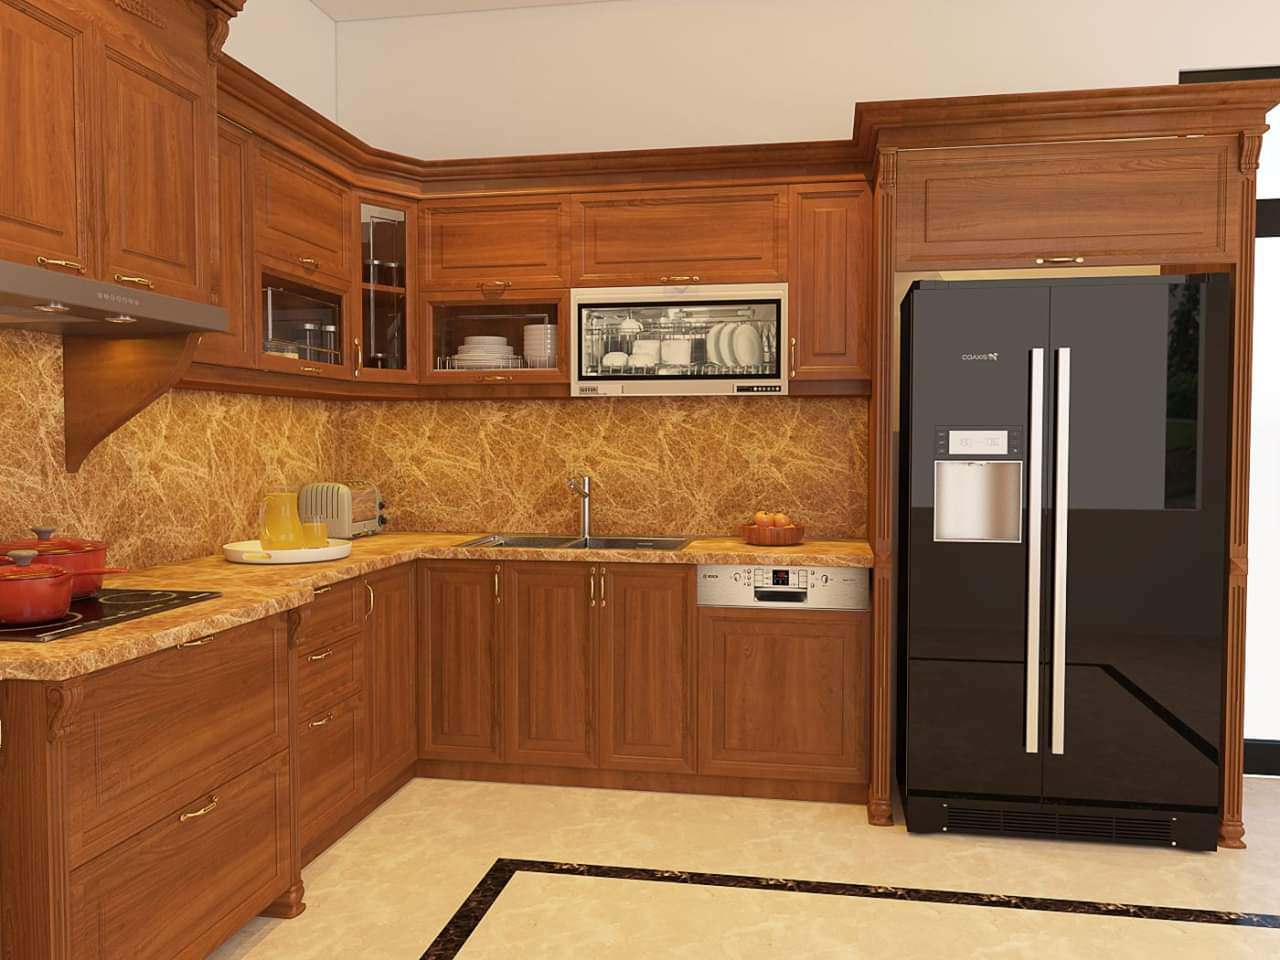 Tủ bếp gỗ gõ đỏ tối màu làm tăng độ ấm cúng cho gian bếp chung